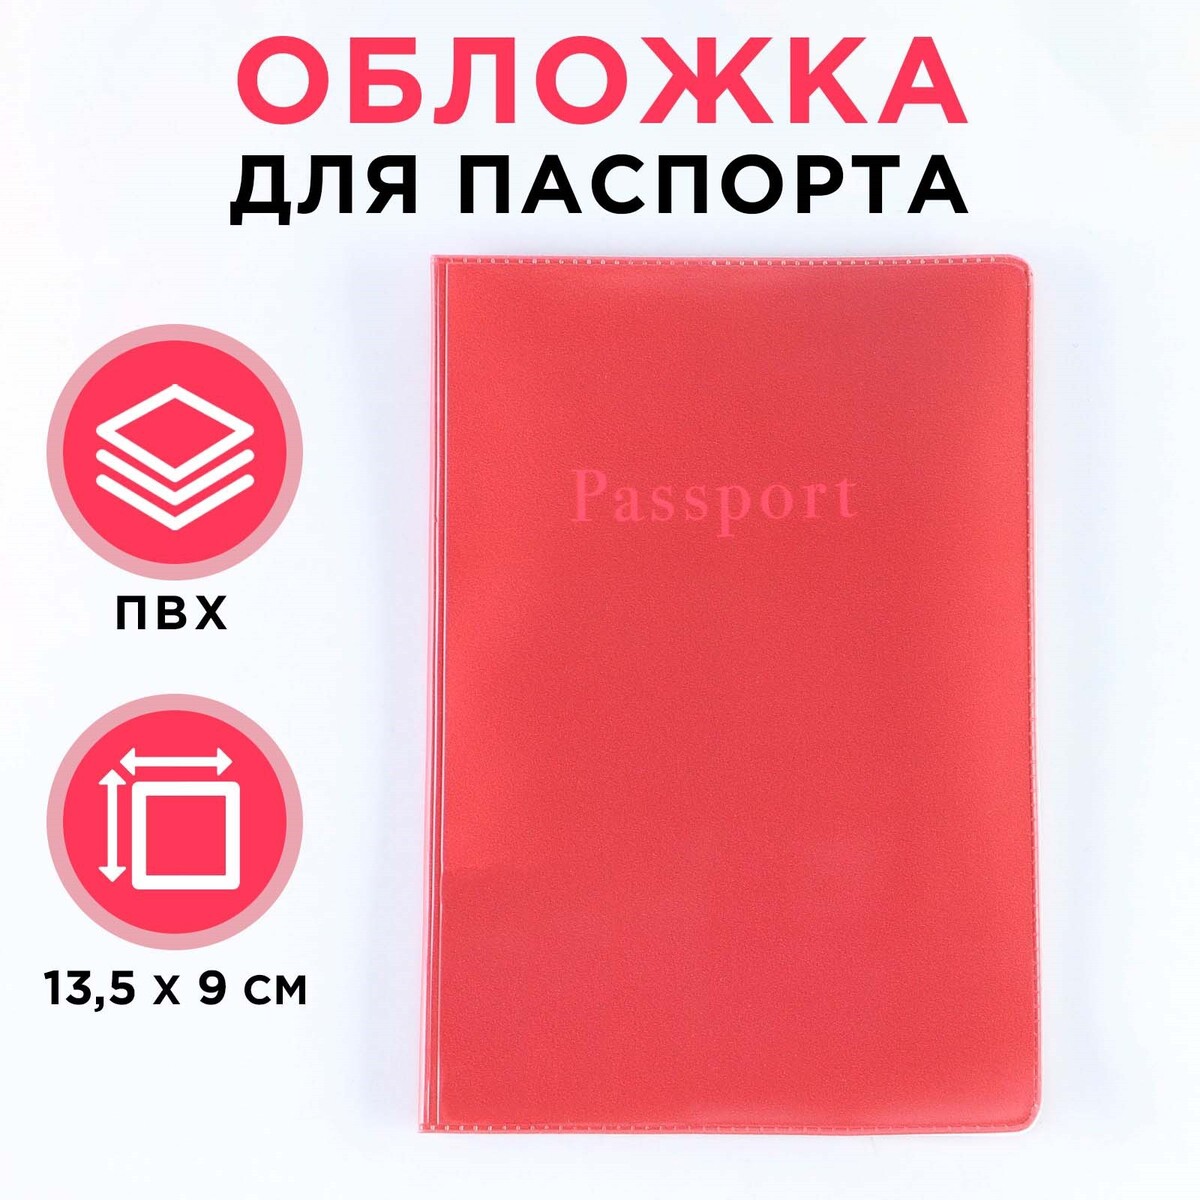 Обложка для паспорта, пвх, оттенок кардинал обложка для паспорта пвх оттенок кардинал